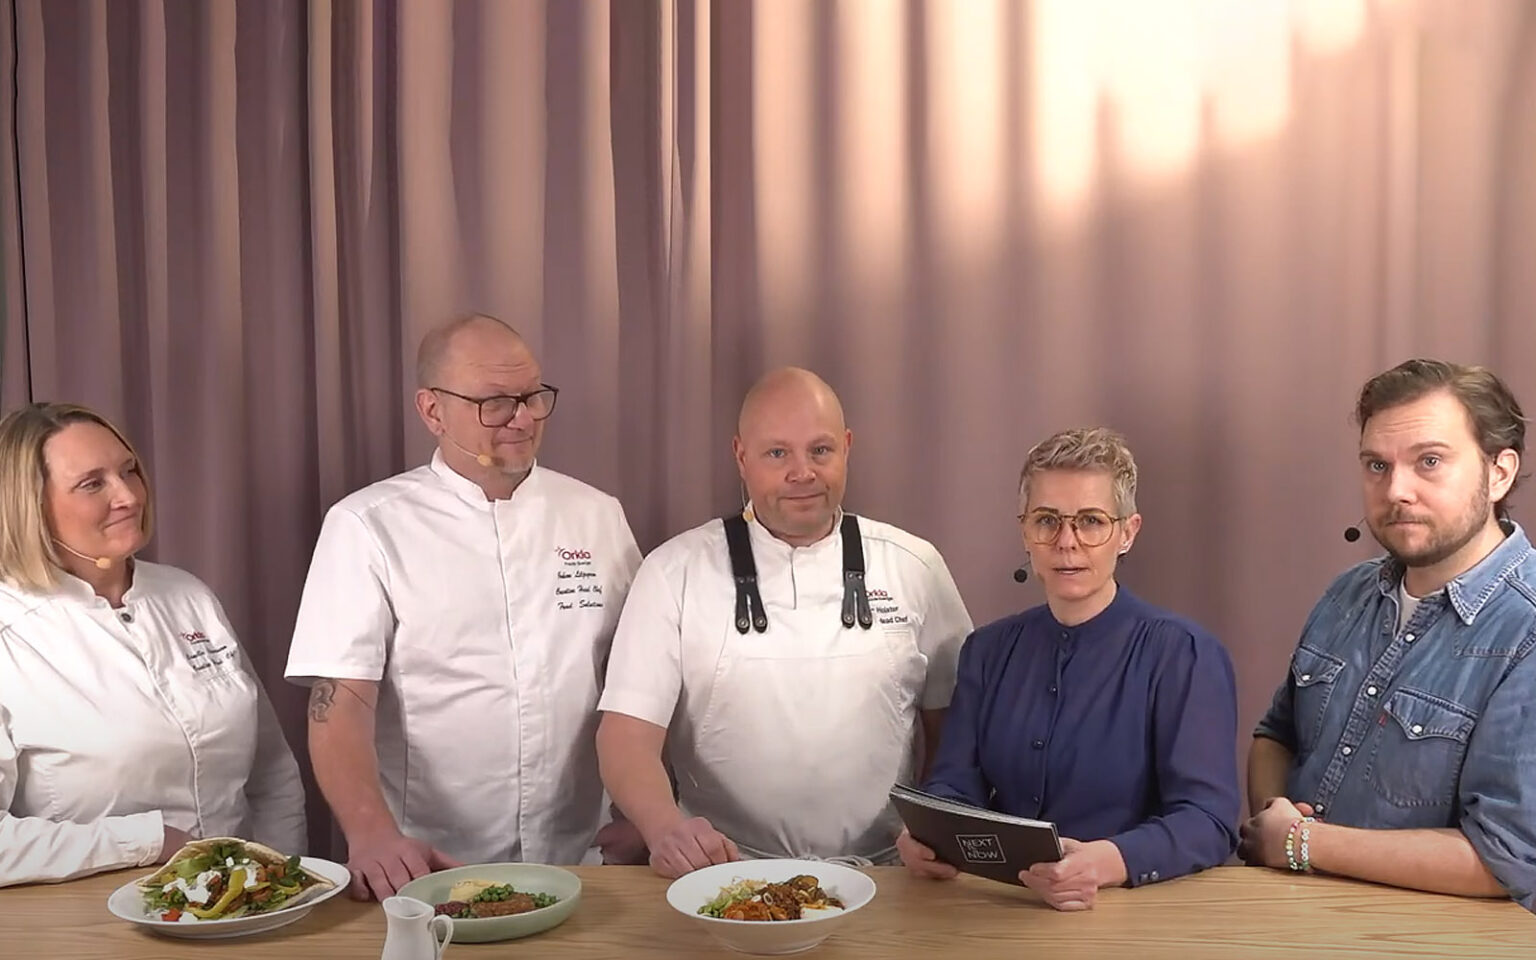 Camilla, Johan och Johan presenterar sina maträtter för Ann och Gustav.